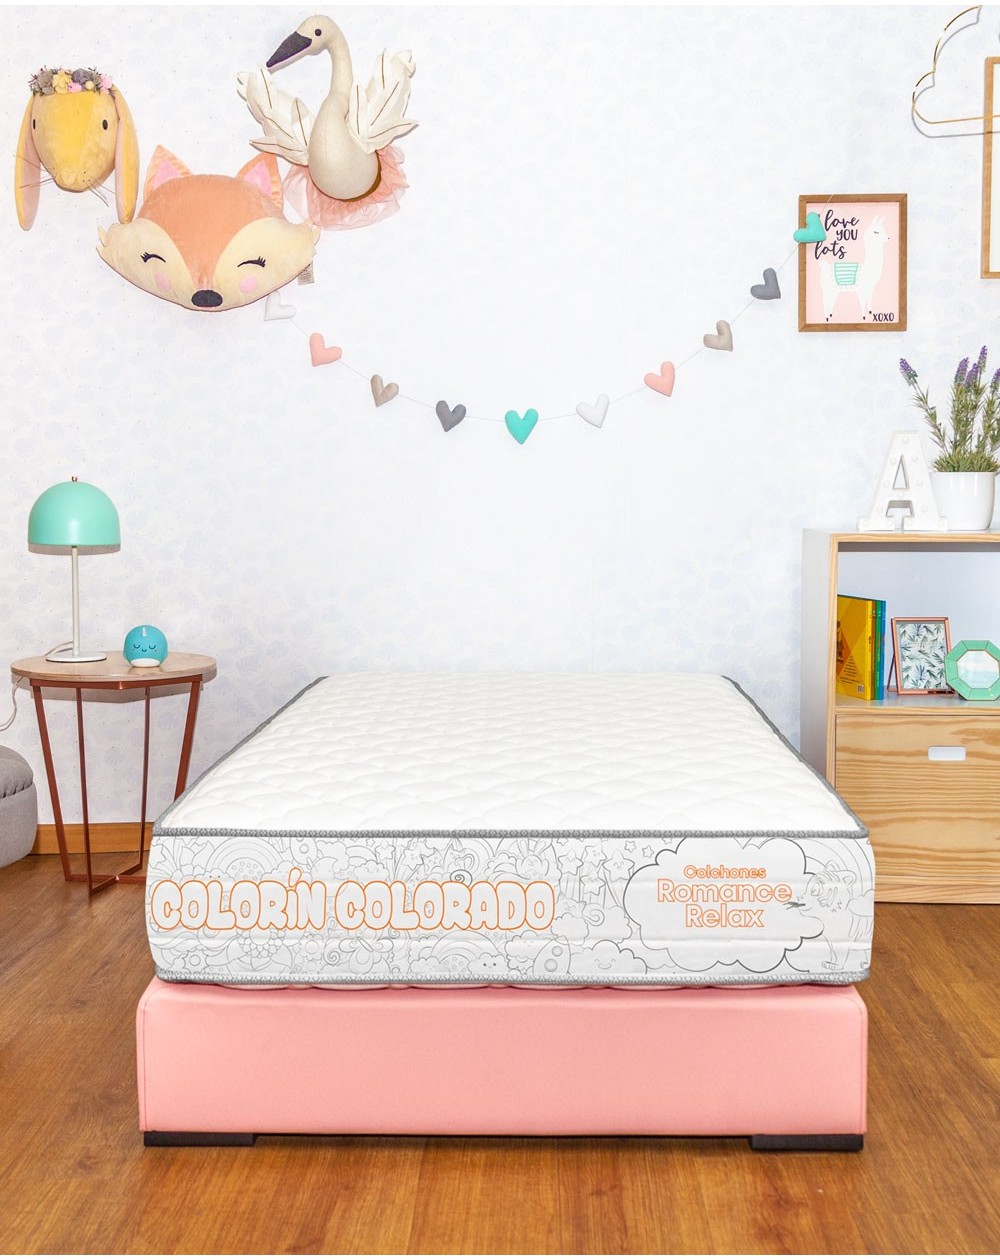 Correspondiente a lema Excesivo Combo Colchón colorín colorado diseñado para niños + base cama.